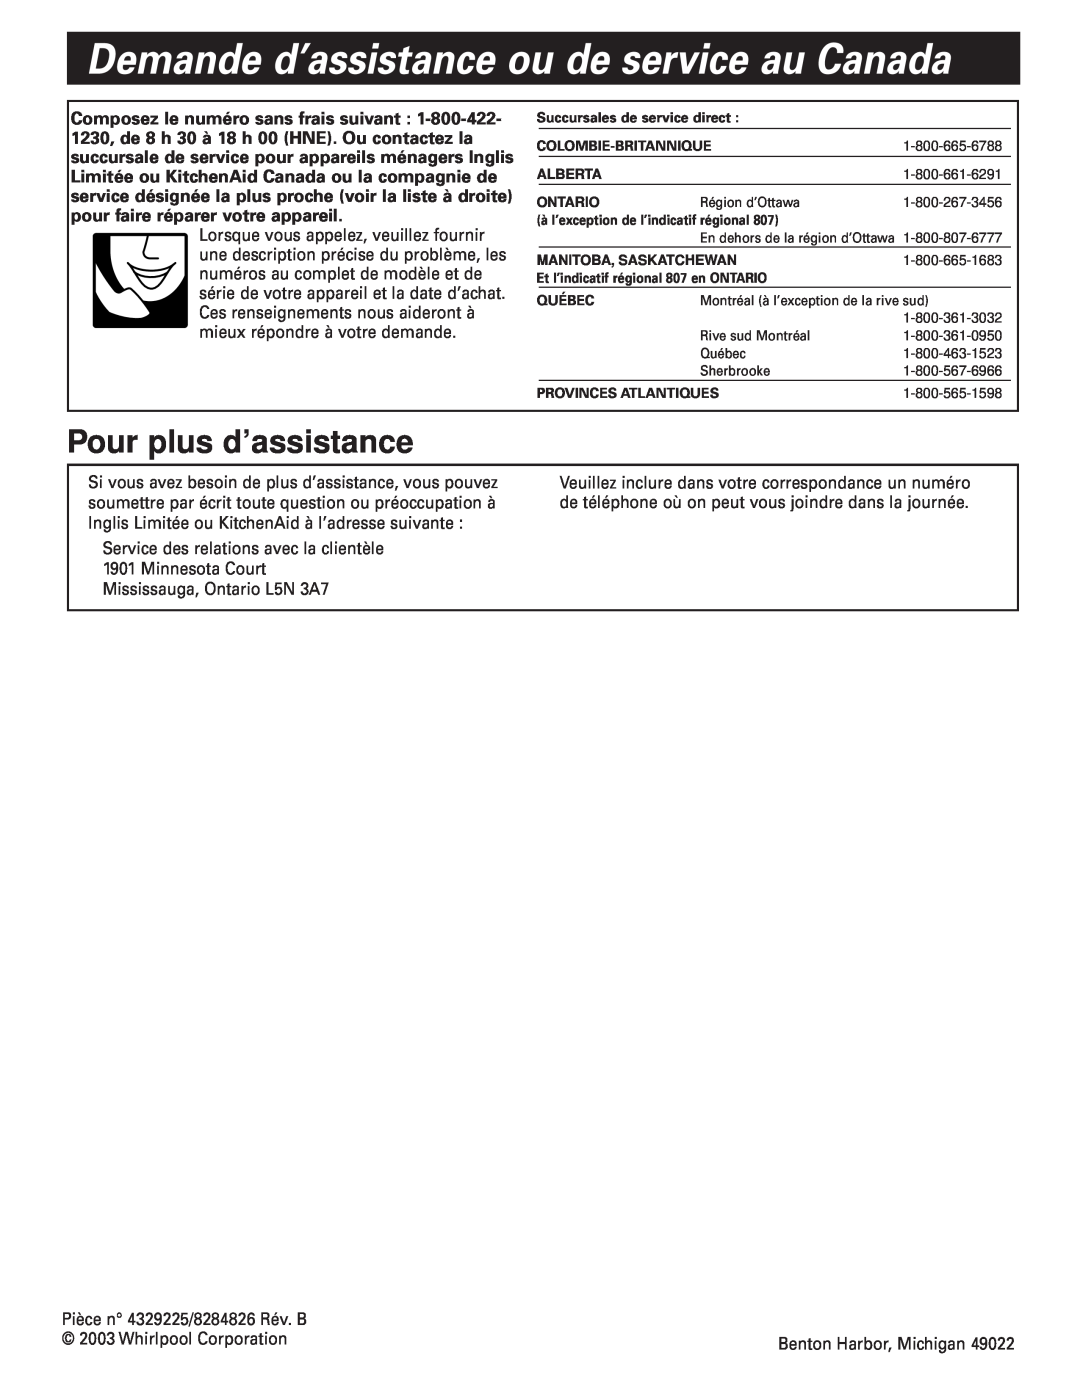 Whirlpool GZ7930XGS0 installation instructions Demande d’assistance ou de service au Canada, Pour plus d’assistance 